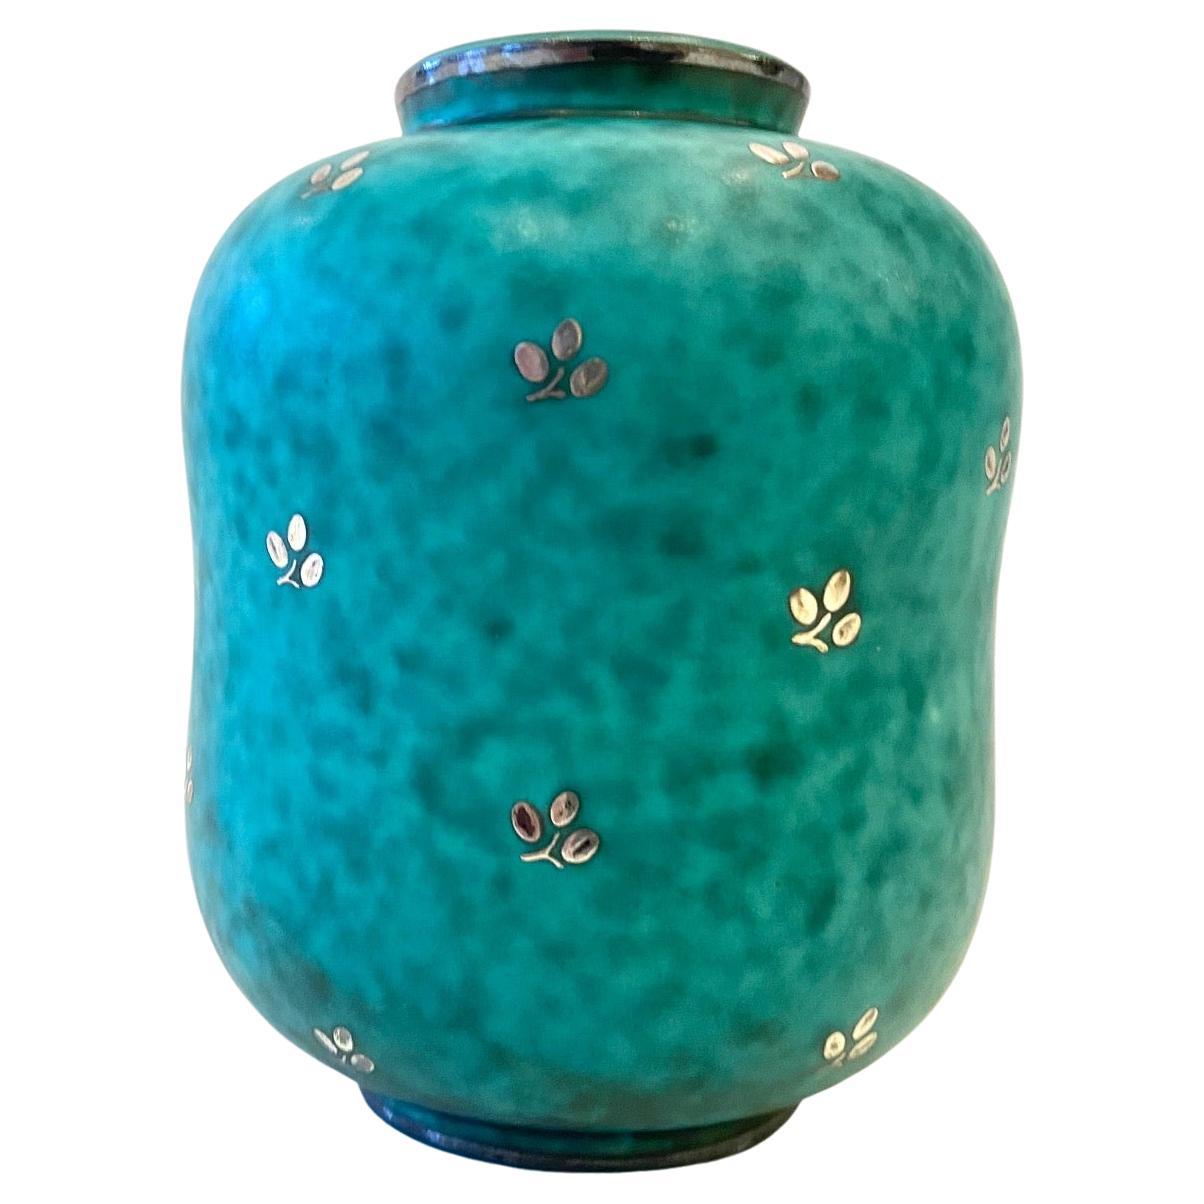 Green Glazed Ceramic "Argenta" Vase by Wilhelm Kage for Gustavsberg